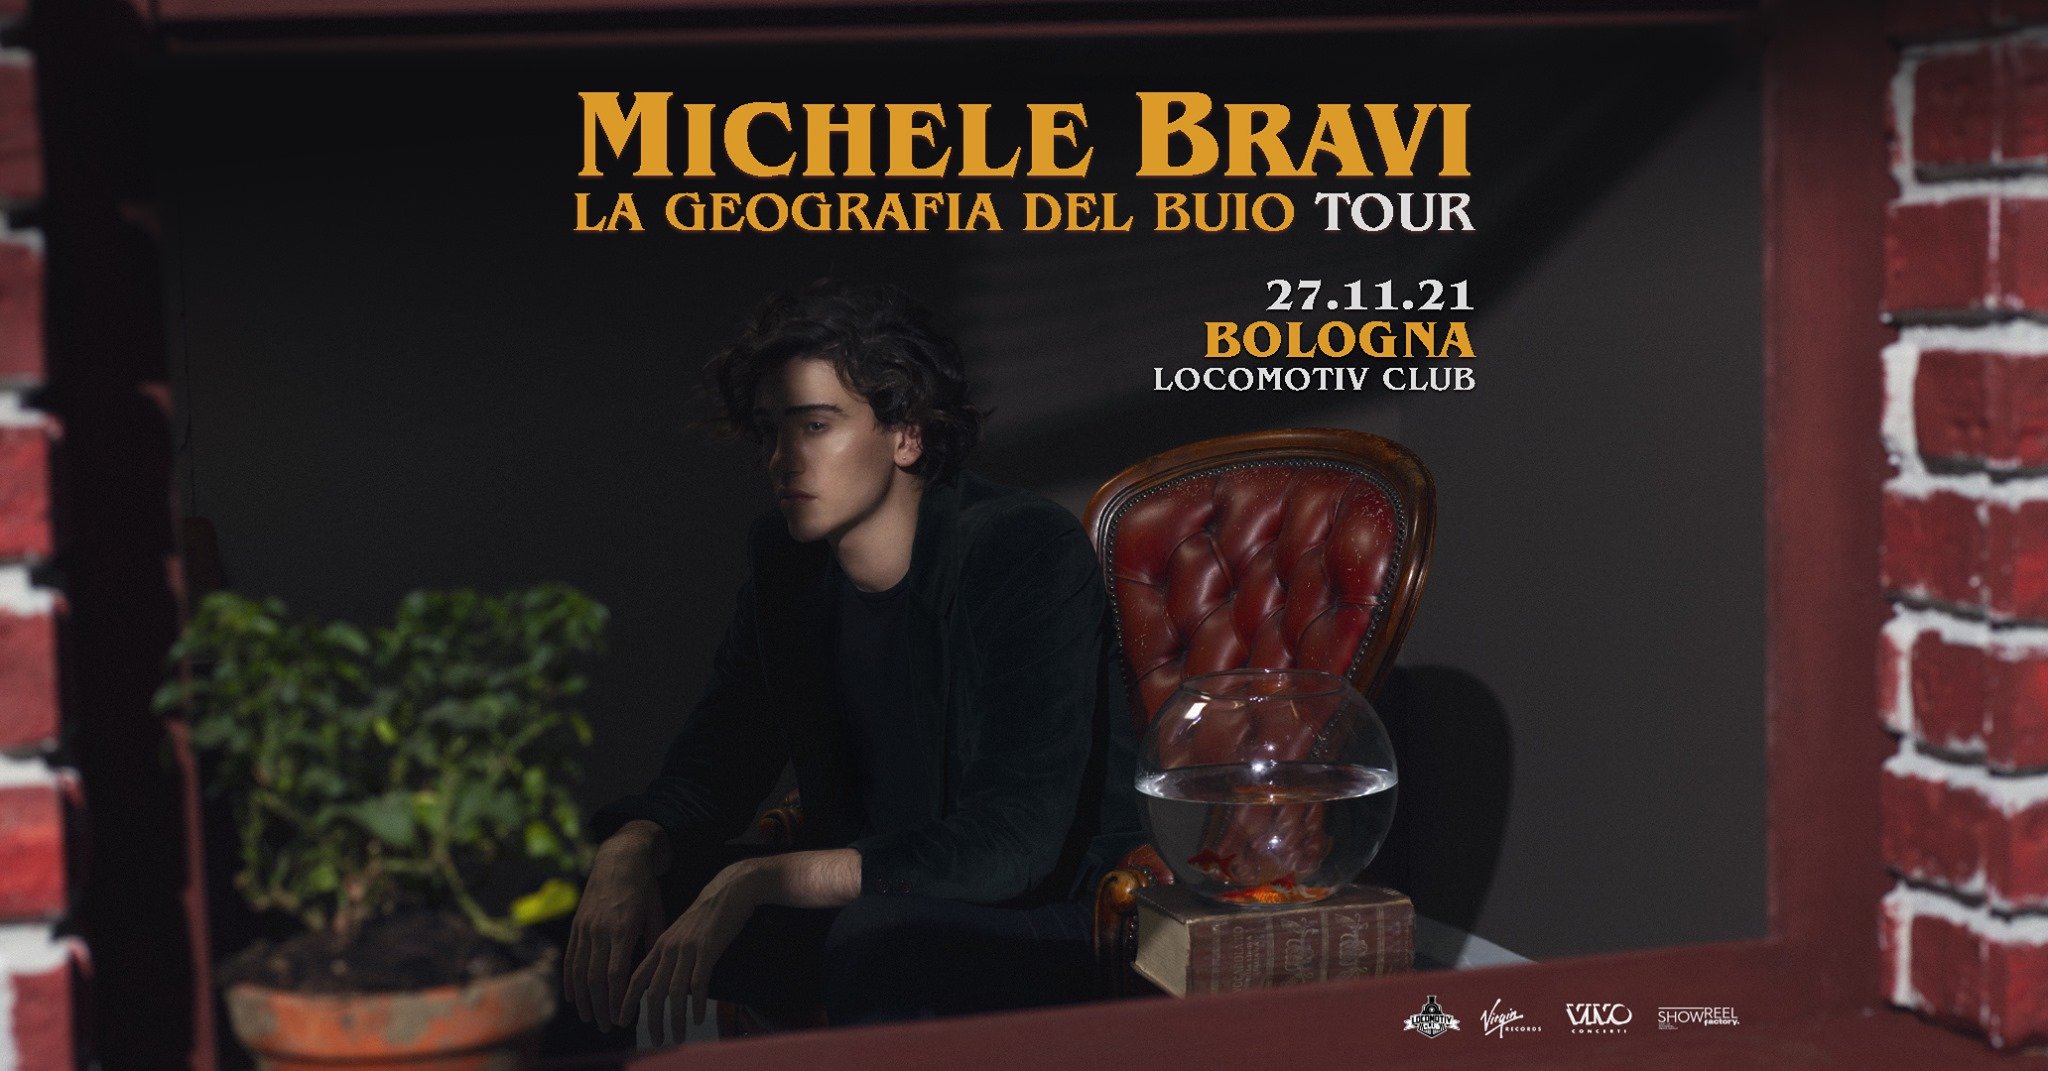 Michele Bravi, La geografia del buio tour, Locomotiv Bologna